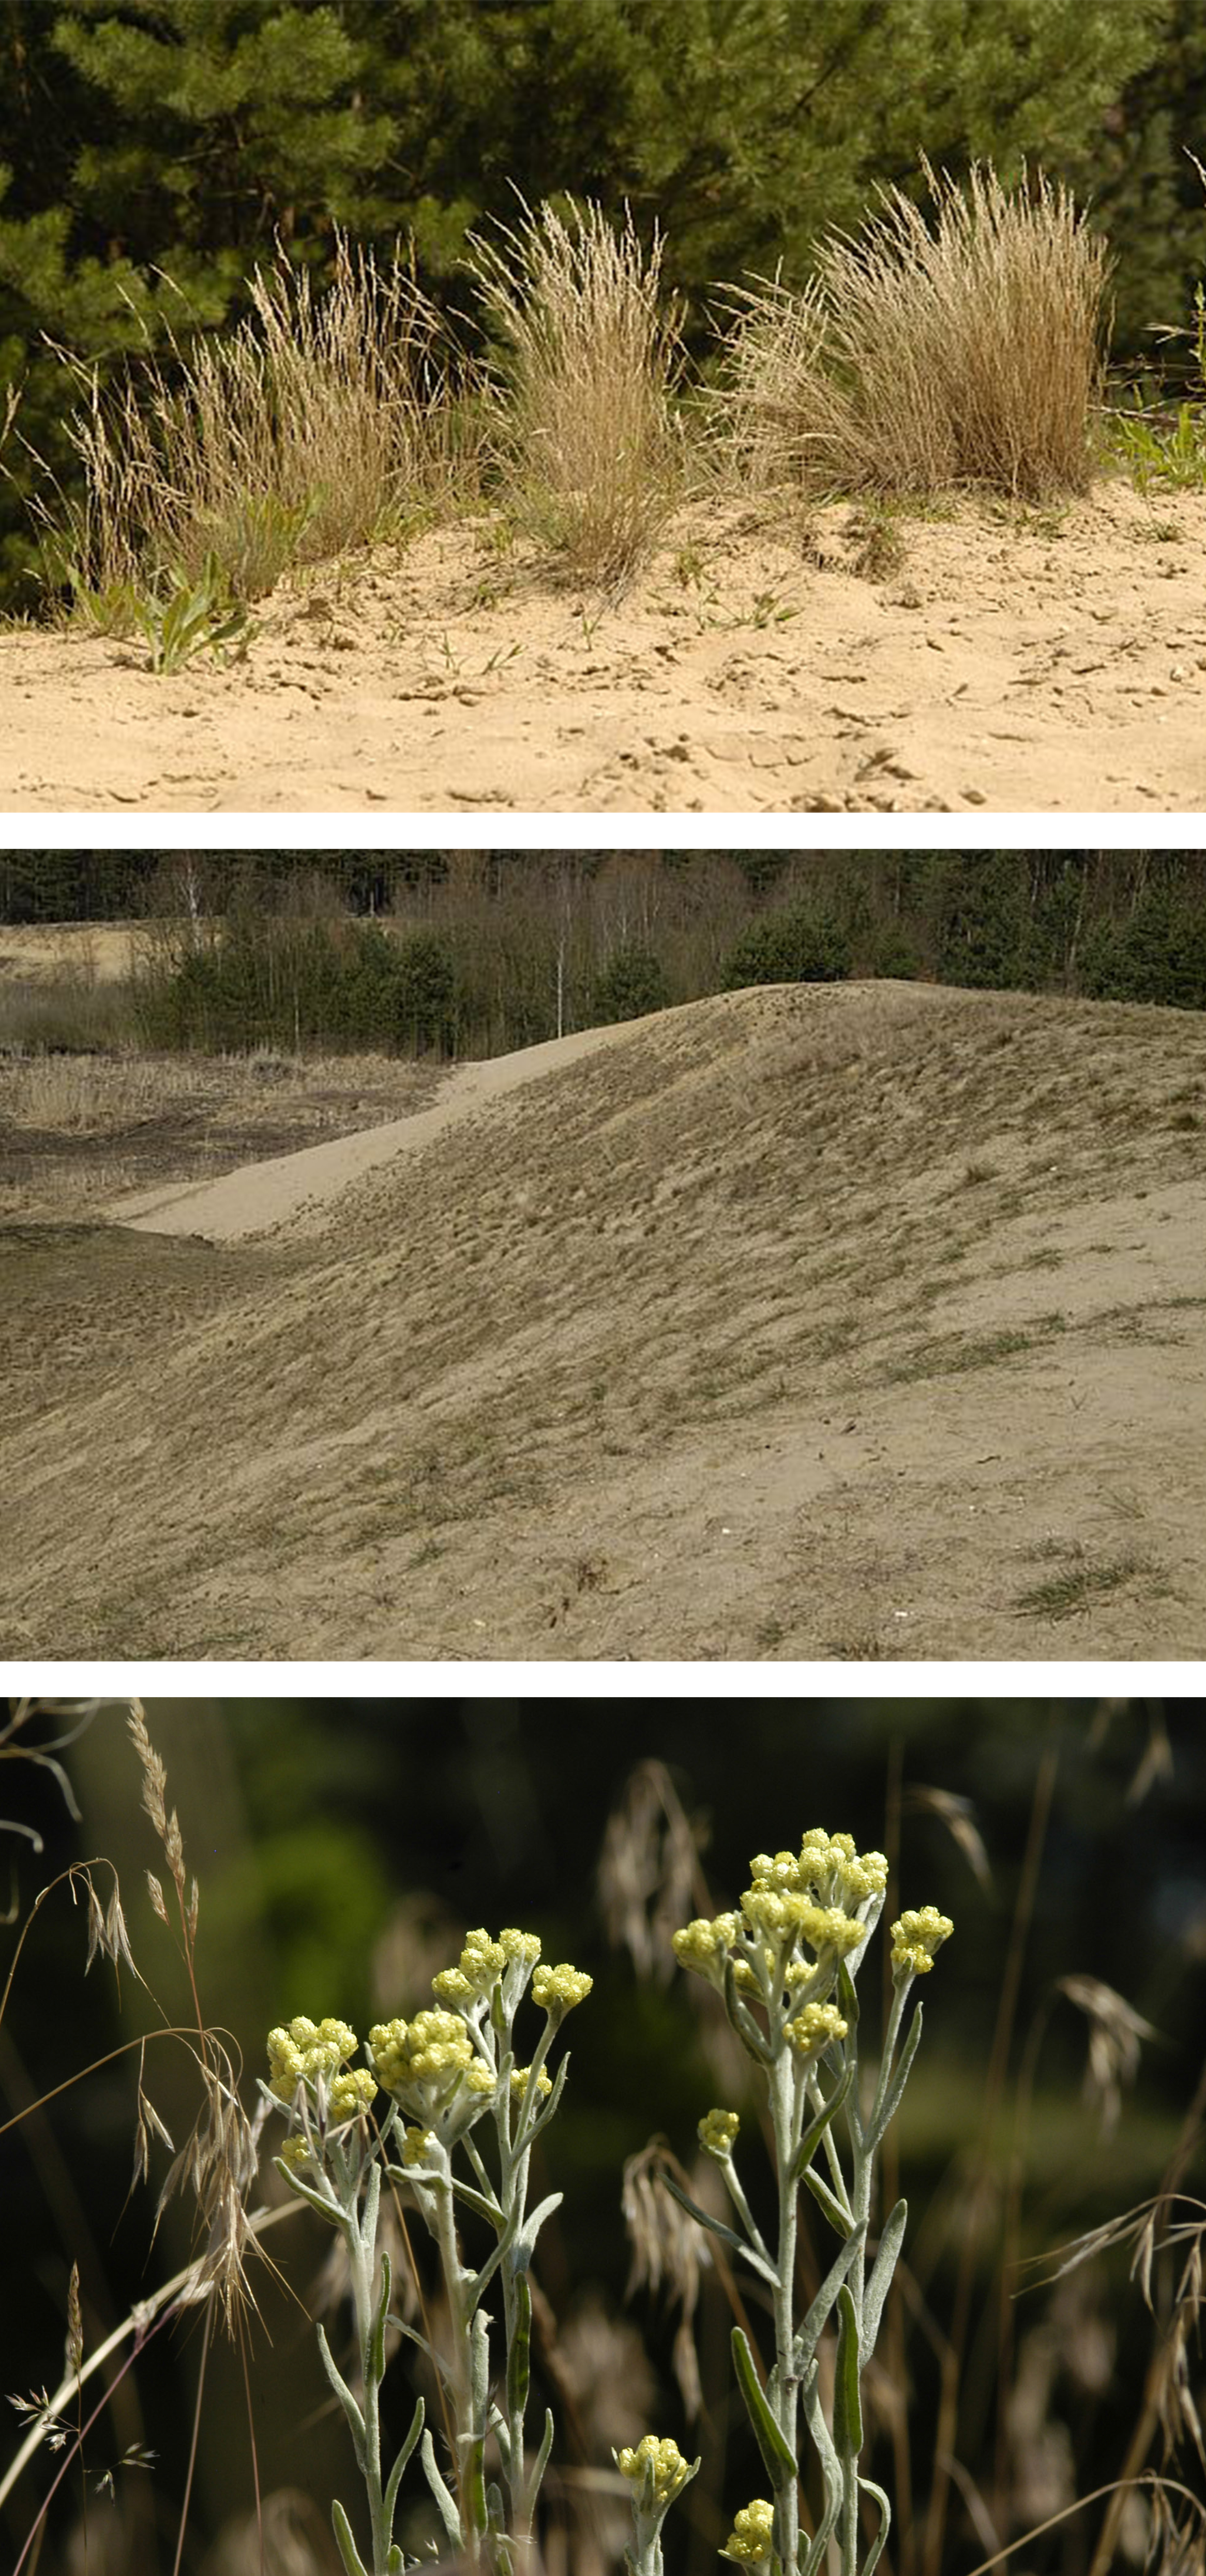 Bilder Sandrasen: Oben Sandrasen mit Silbergras, in der Mitte dünenartiger Sandrasen, Unten sandrasentypische Vegetation